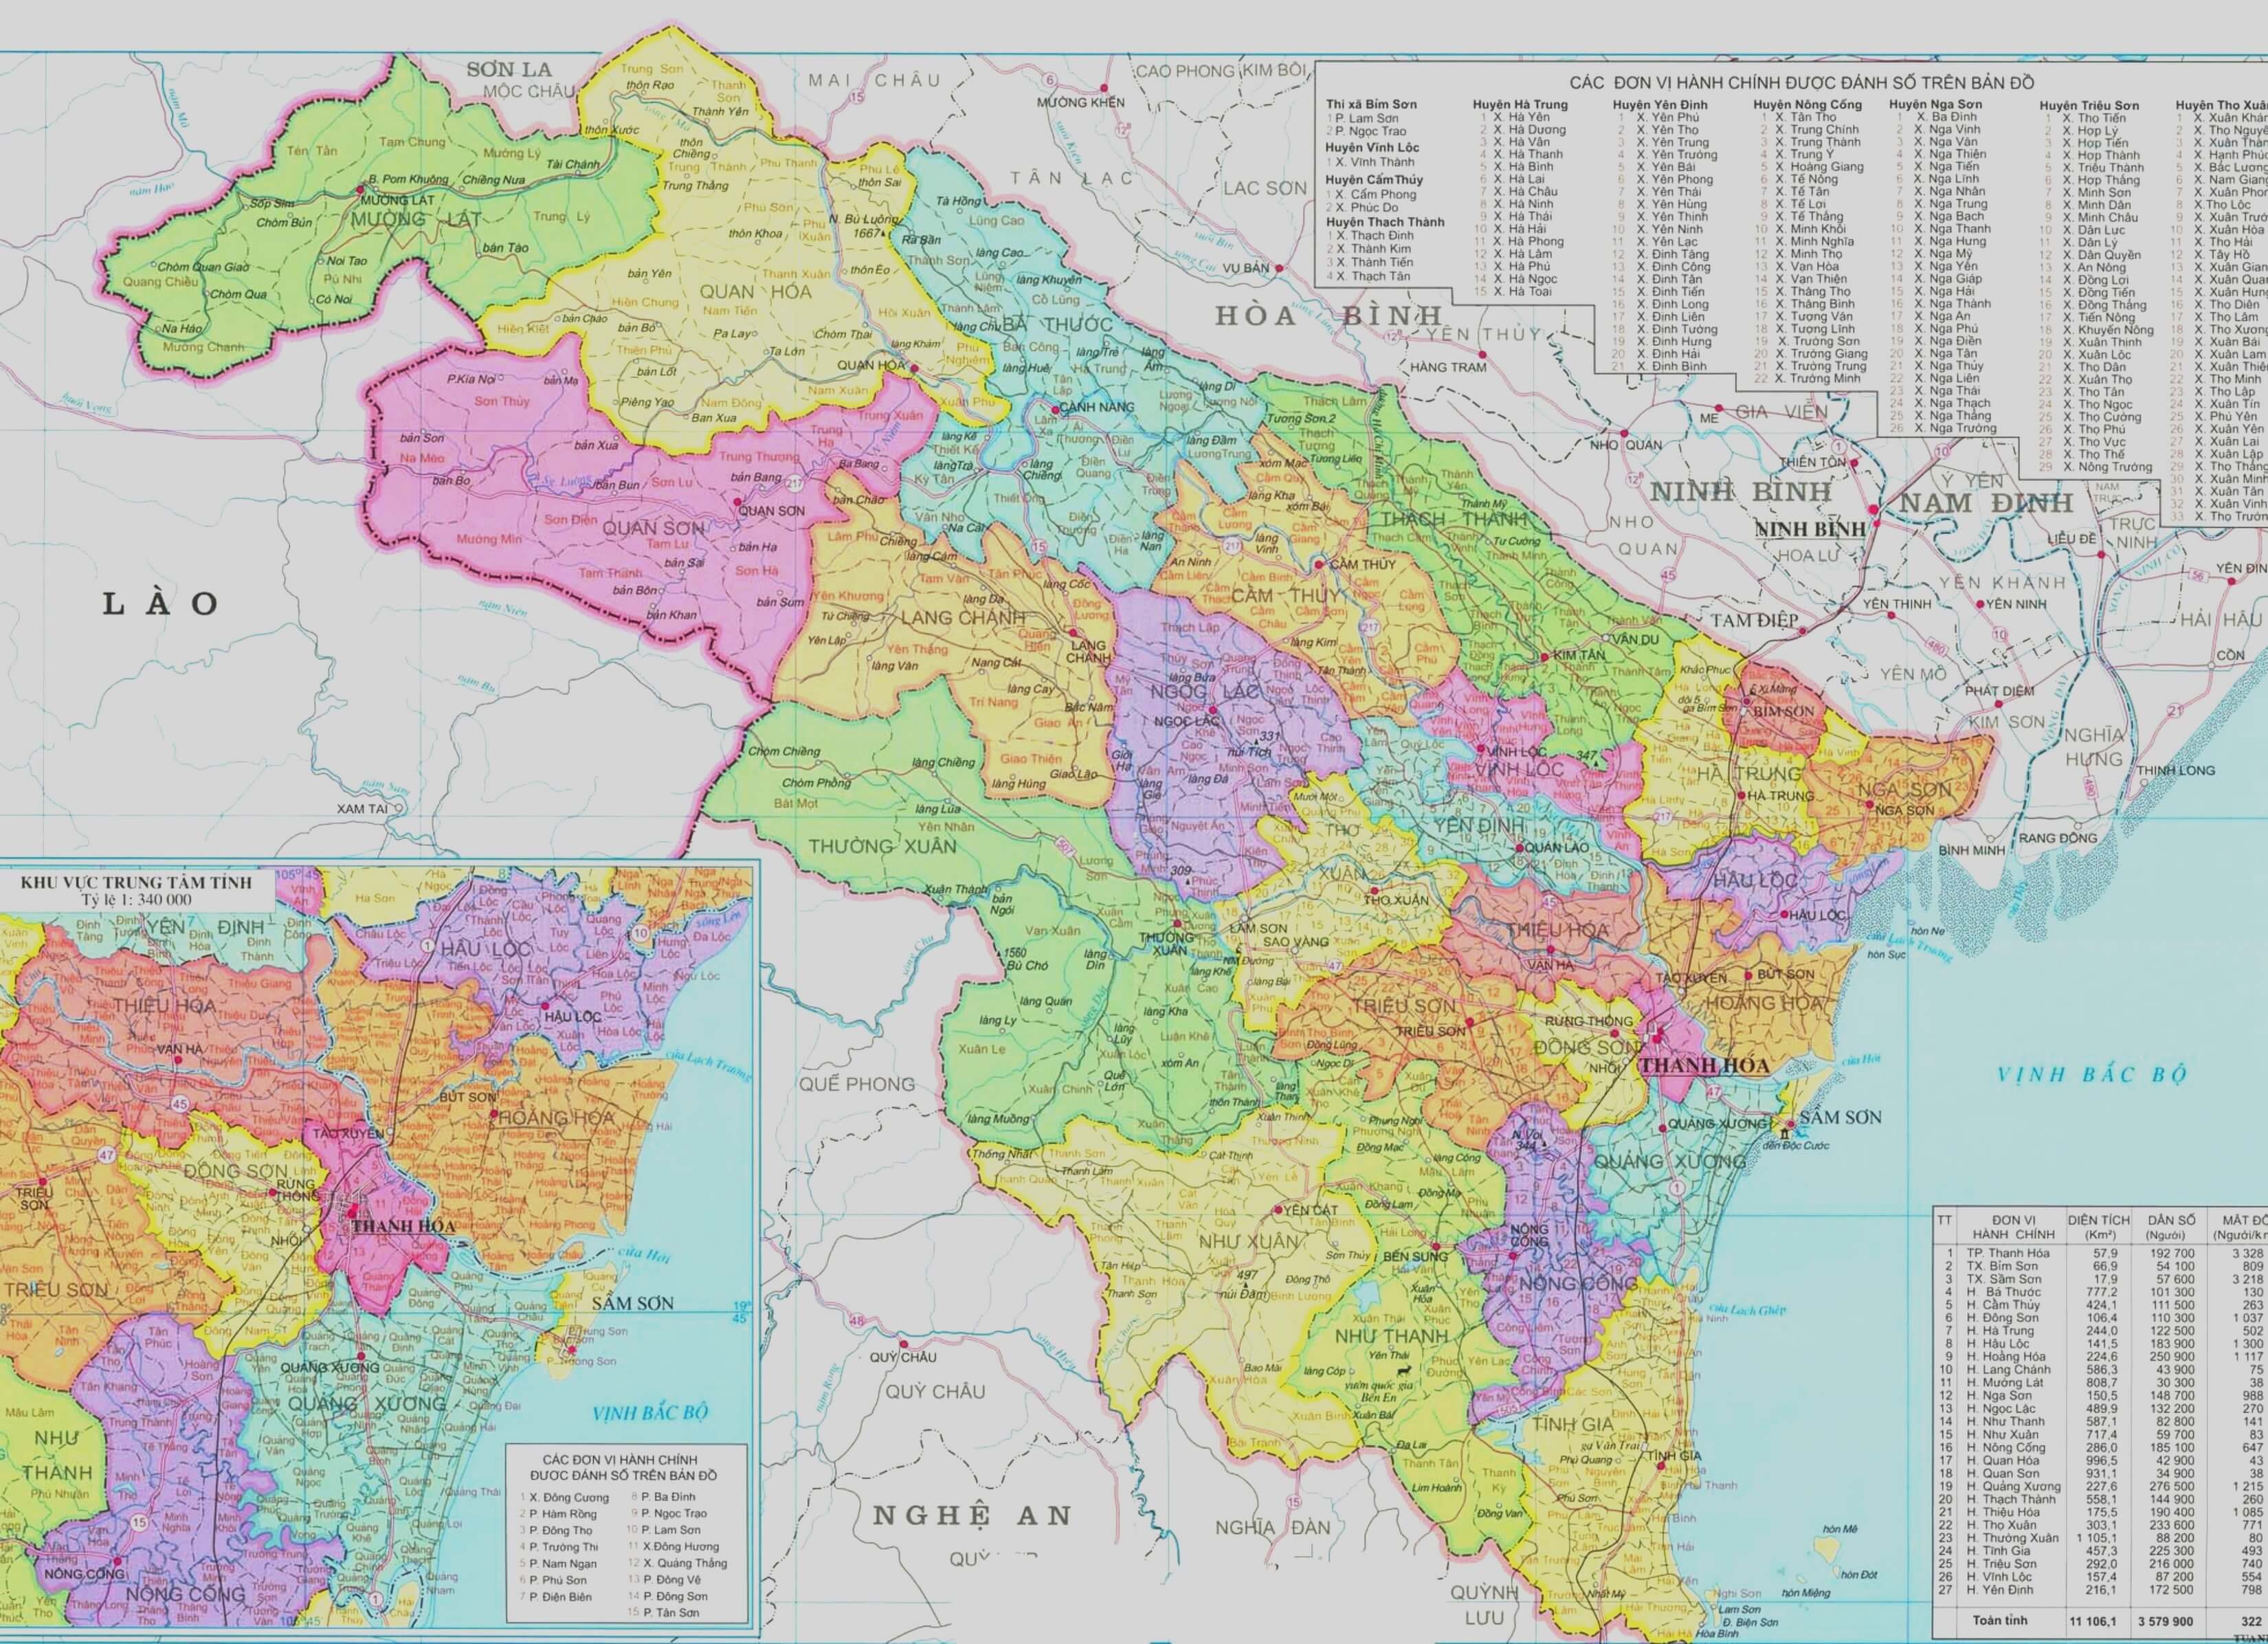 Không thể bỏ lỡ bản đồ địa lý tỉnh Thanh Hóa năm 2024! Với nhiều cập nhật mới nhất, bản đồ này sẽ mang đến cho bạn một cái nhìn đầy đủ về các địa danh và cơ sở hạ tầng của tỉnh Thanh Hóa.